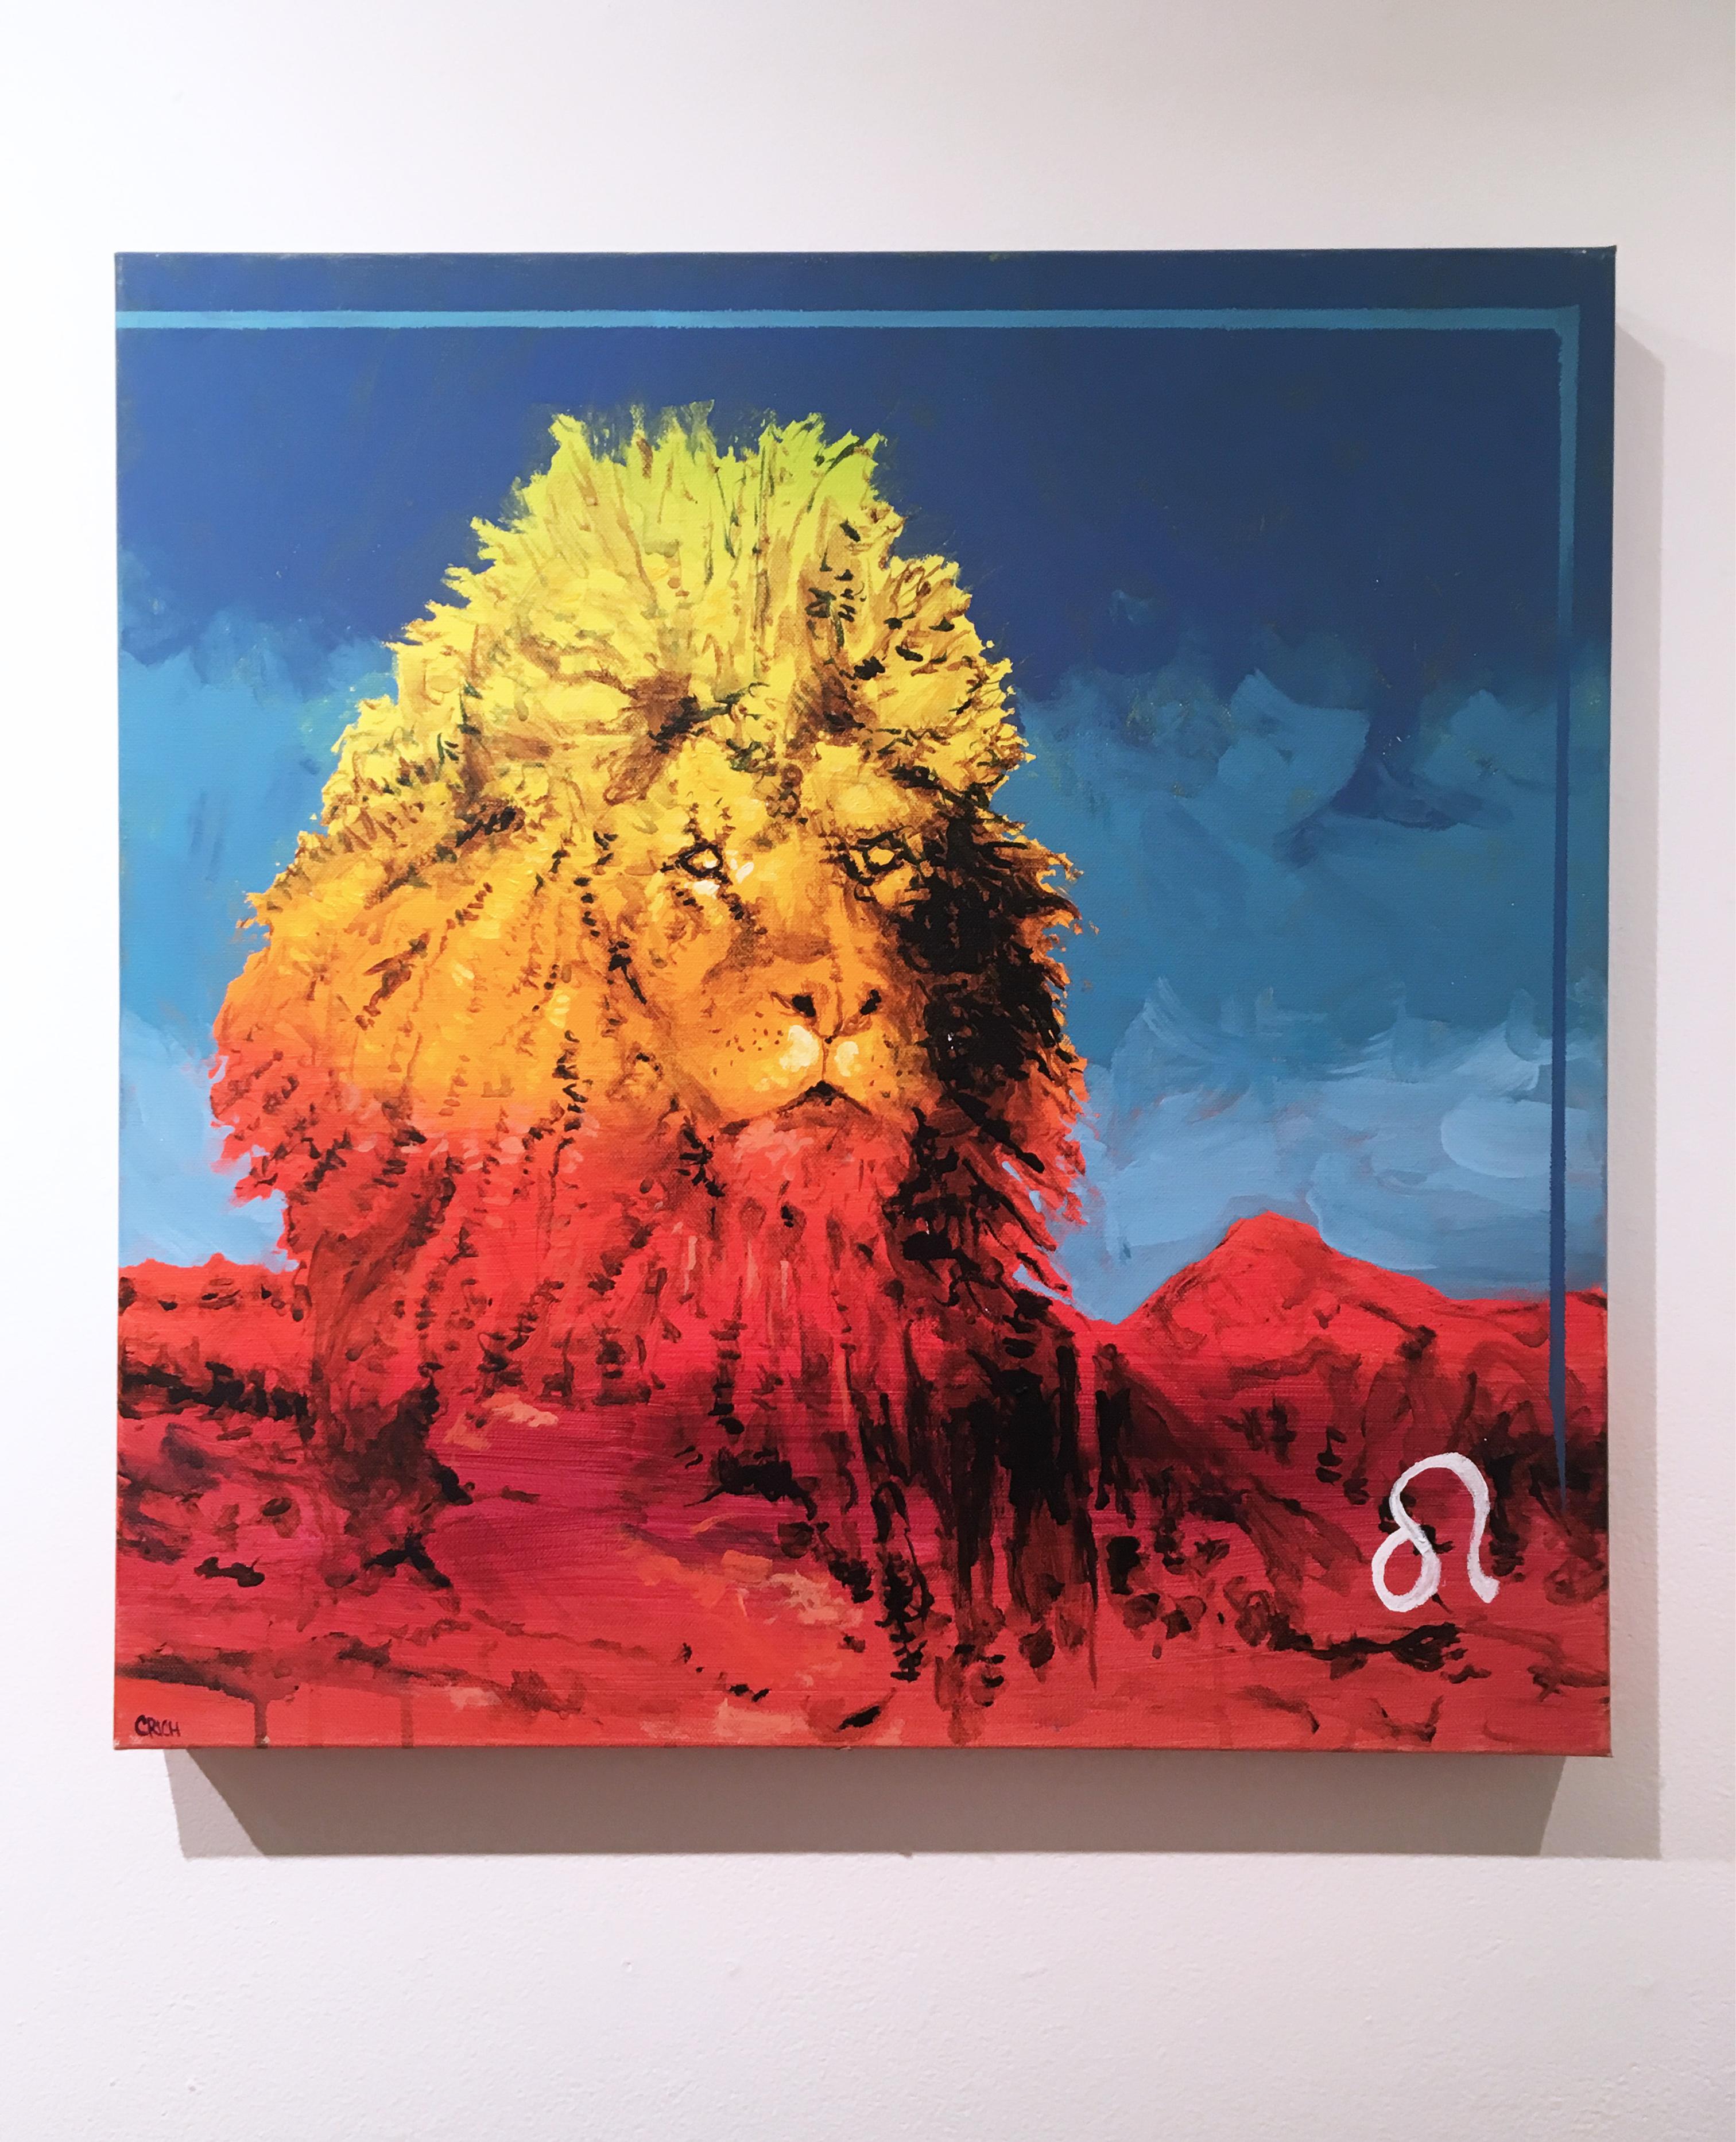 Leo Leo, 2017, Tier, Sternzeichen, Löwe, Rot, Gelb, Blau, Tier, figurativ – Painting von Clarence Rich